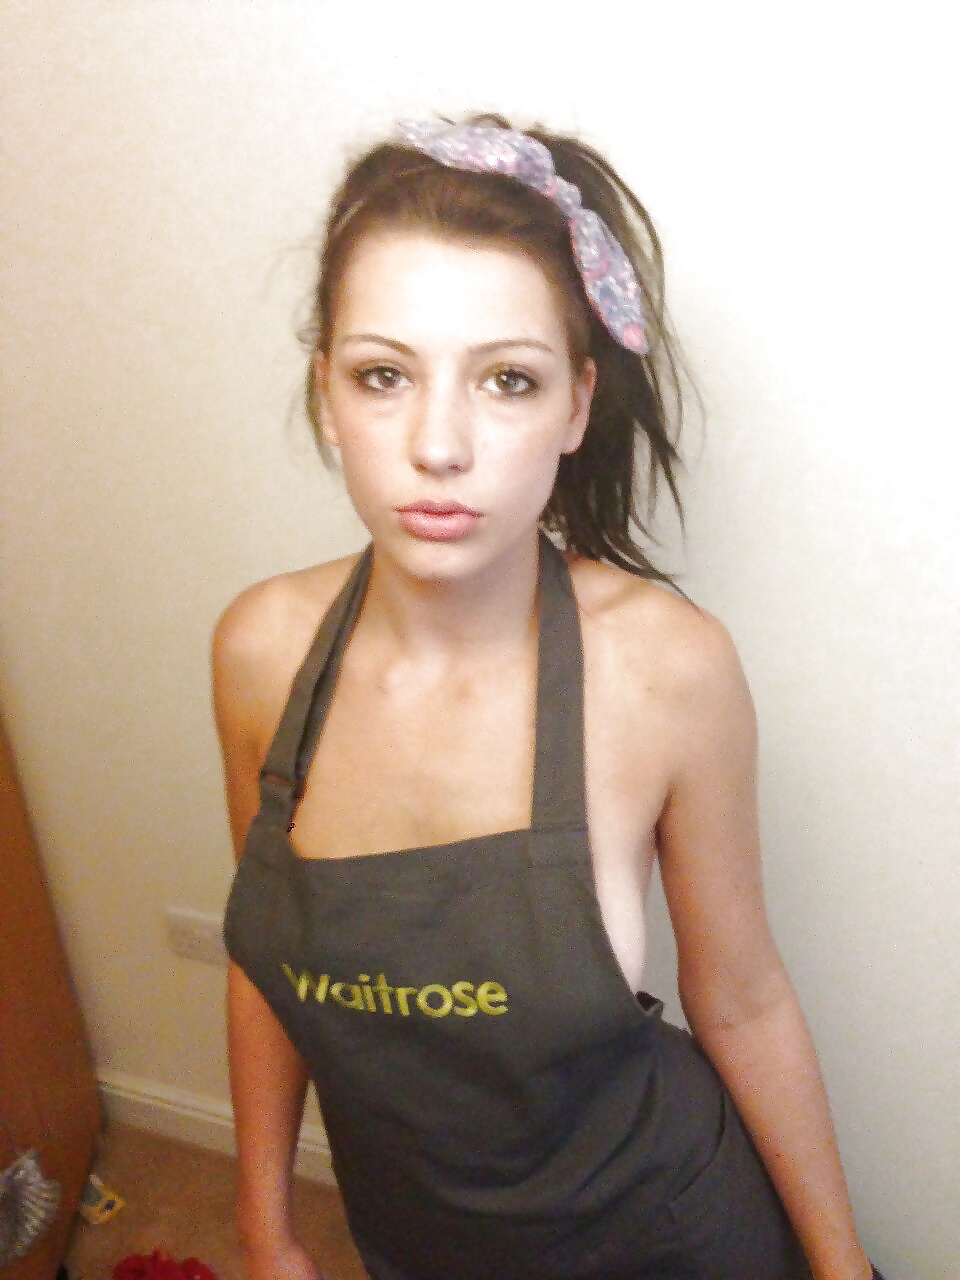 Sexy waitrose empleado - hambriento de polla
 #29021742